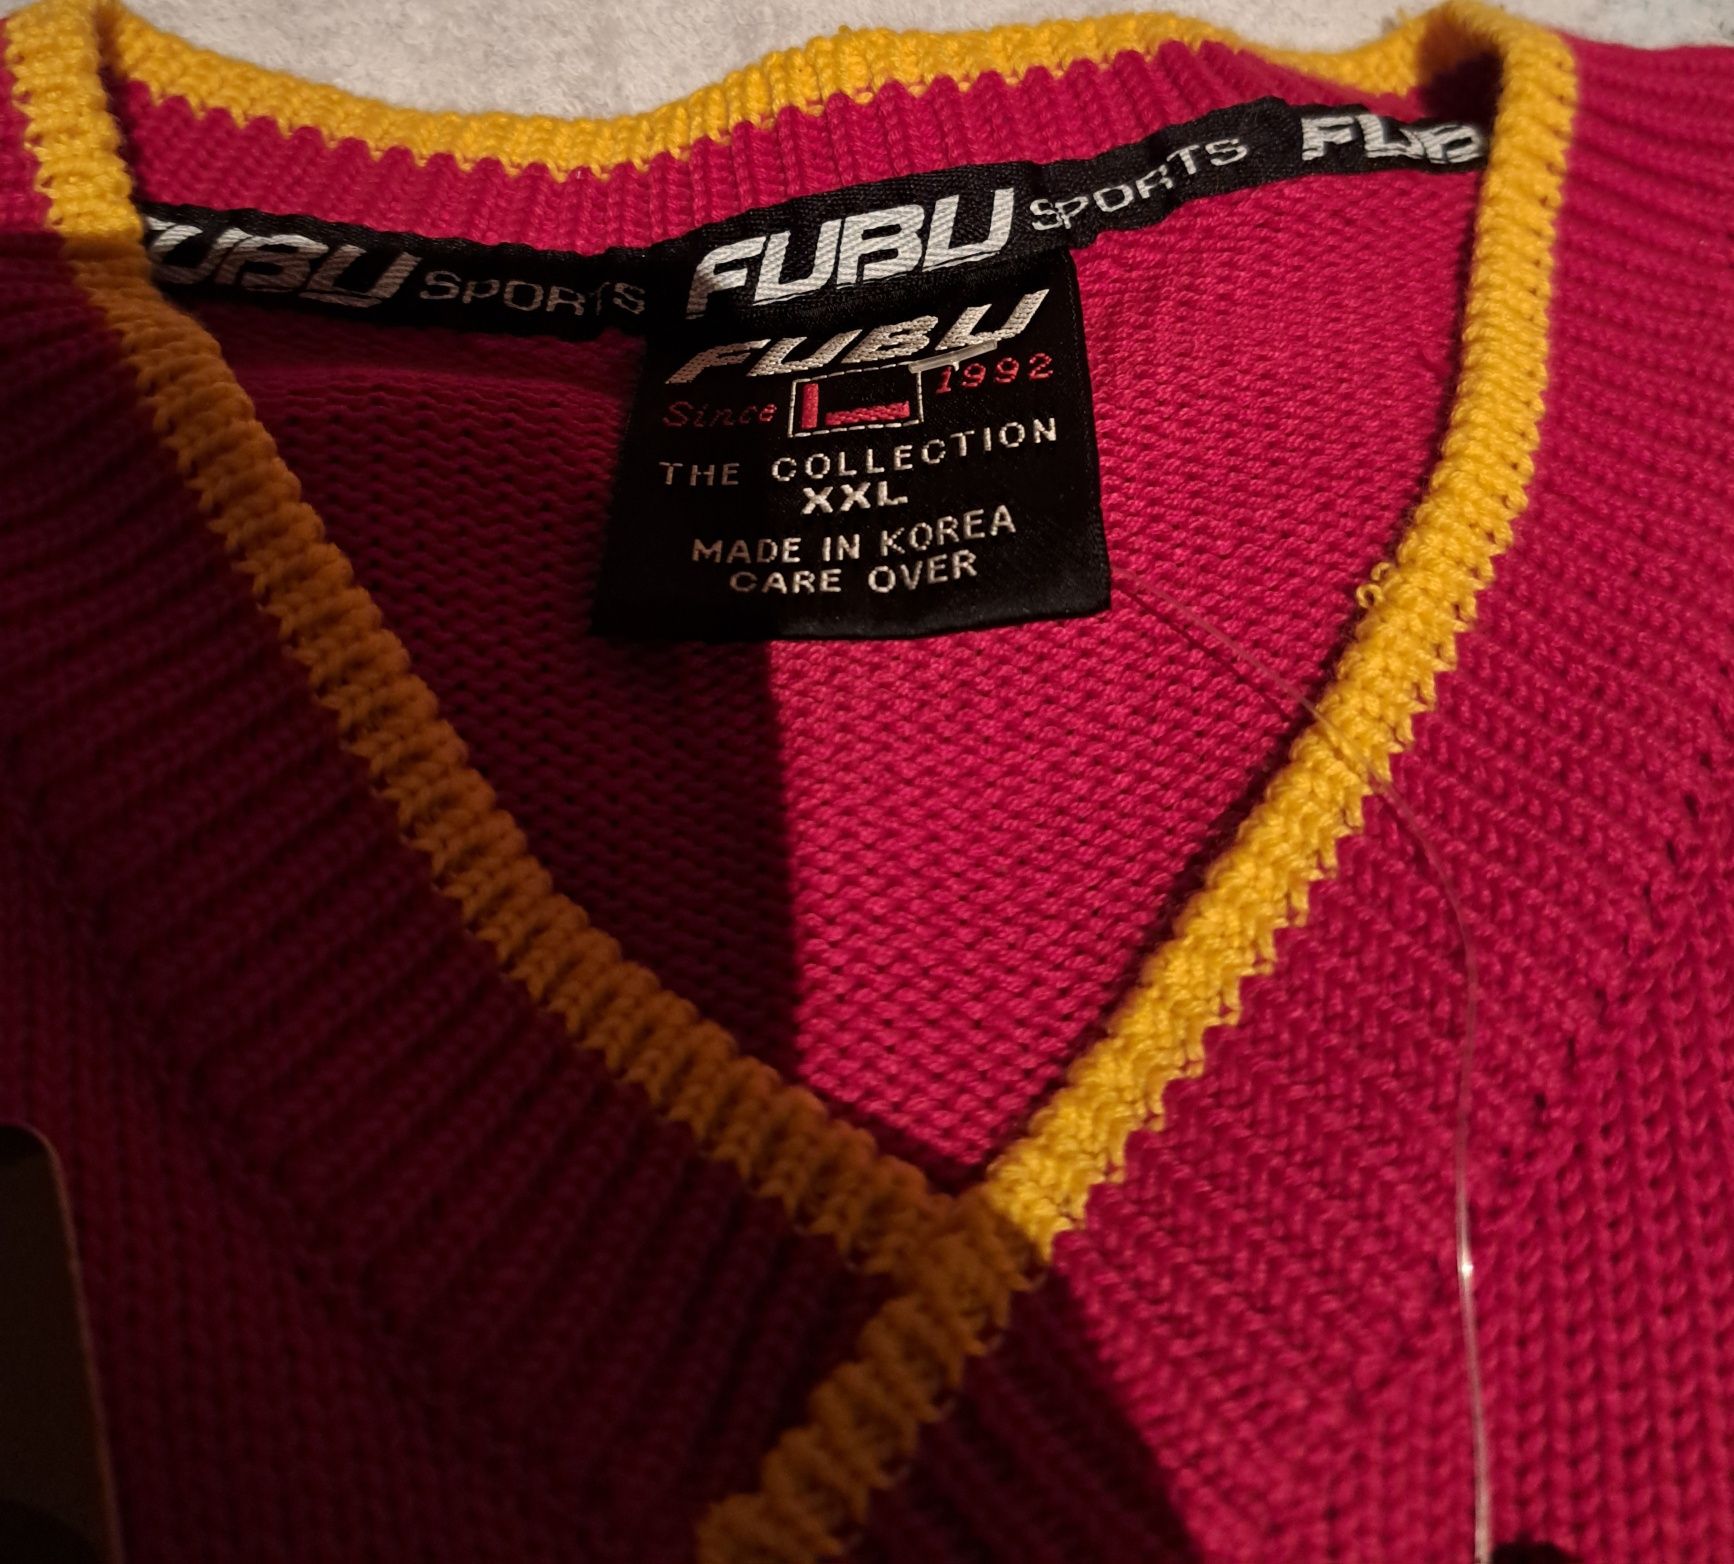 Super orginalny swetr męski " Fubu " The Collection unikatowy z USA